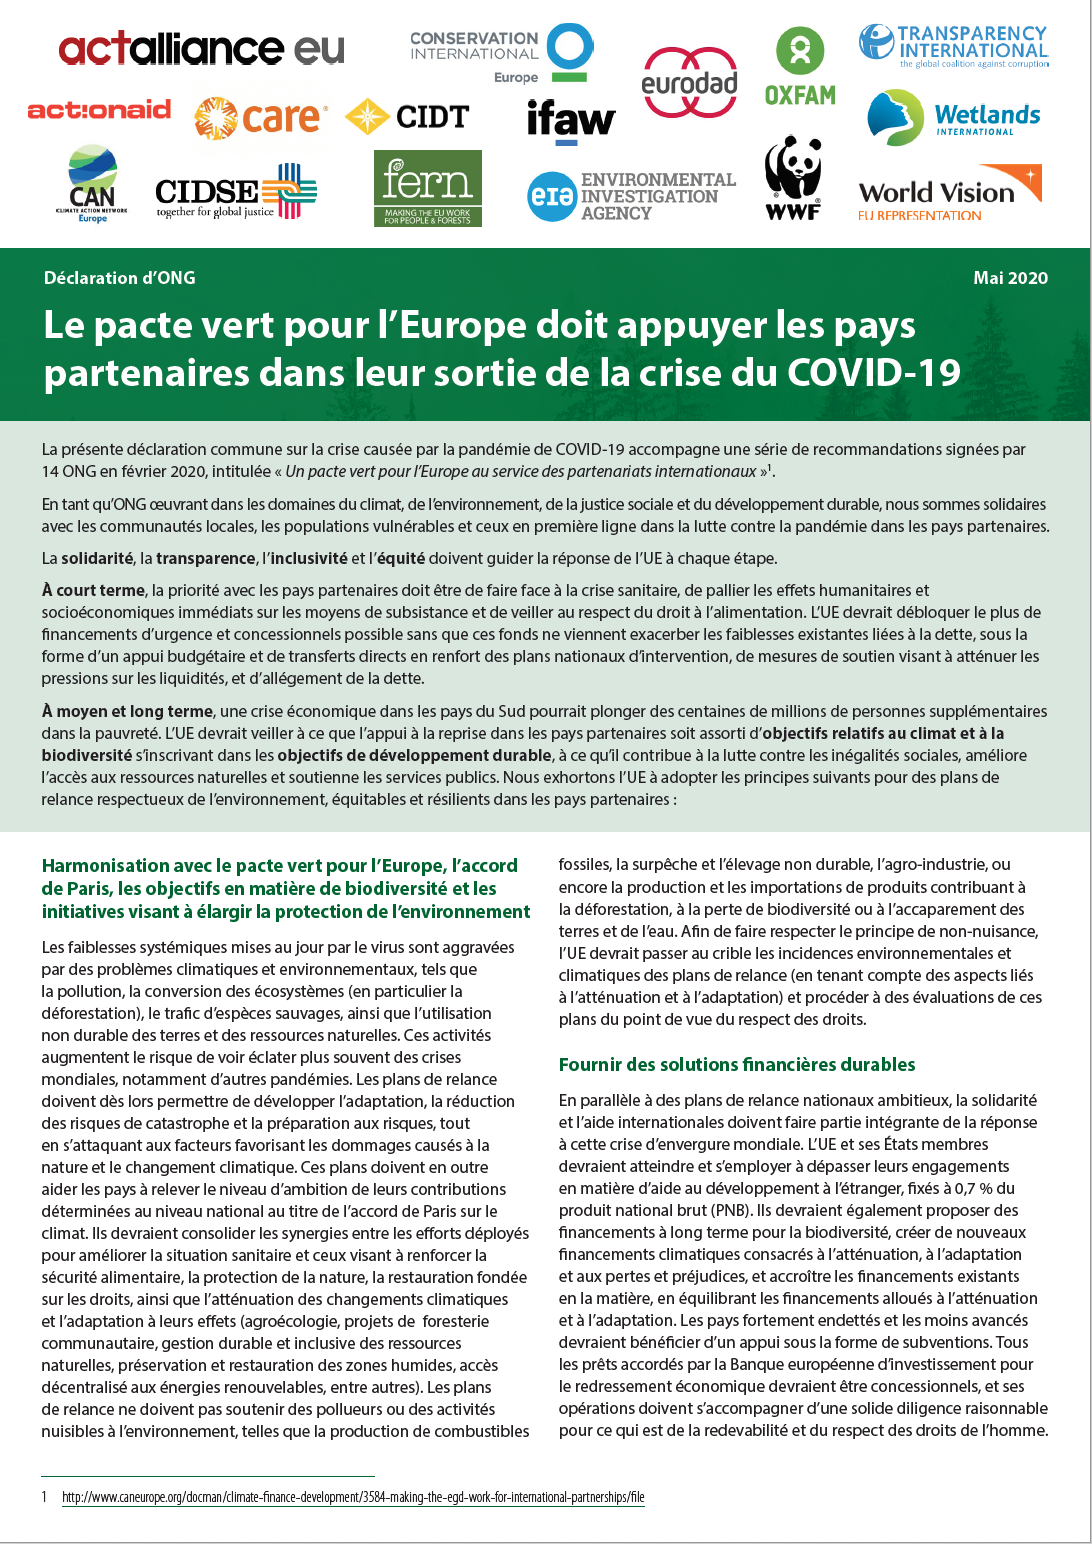 Le pacte vert pour l’Europe doit appuyer les pays partenaires dans leur sortie de la crise du COVID-19